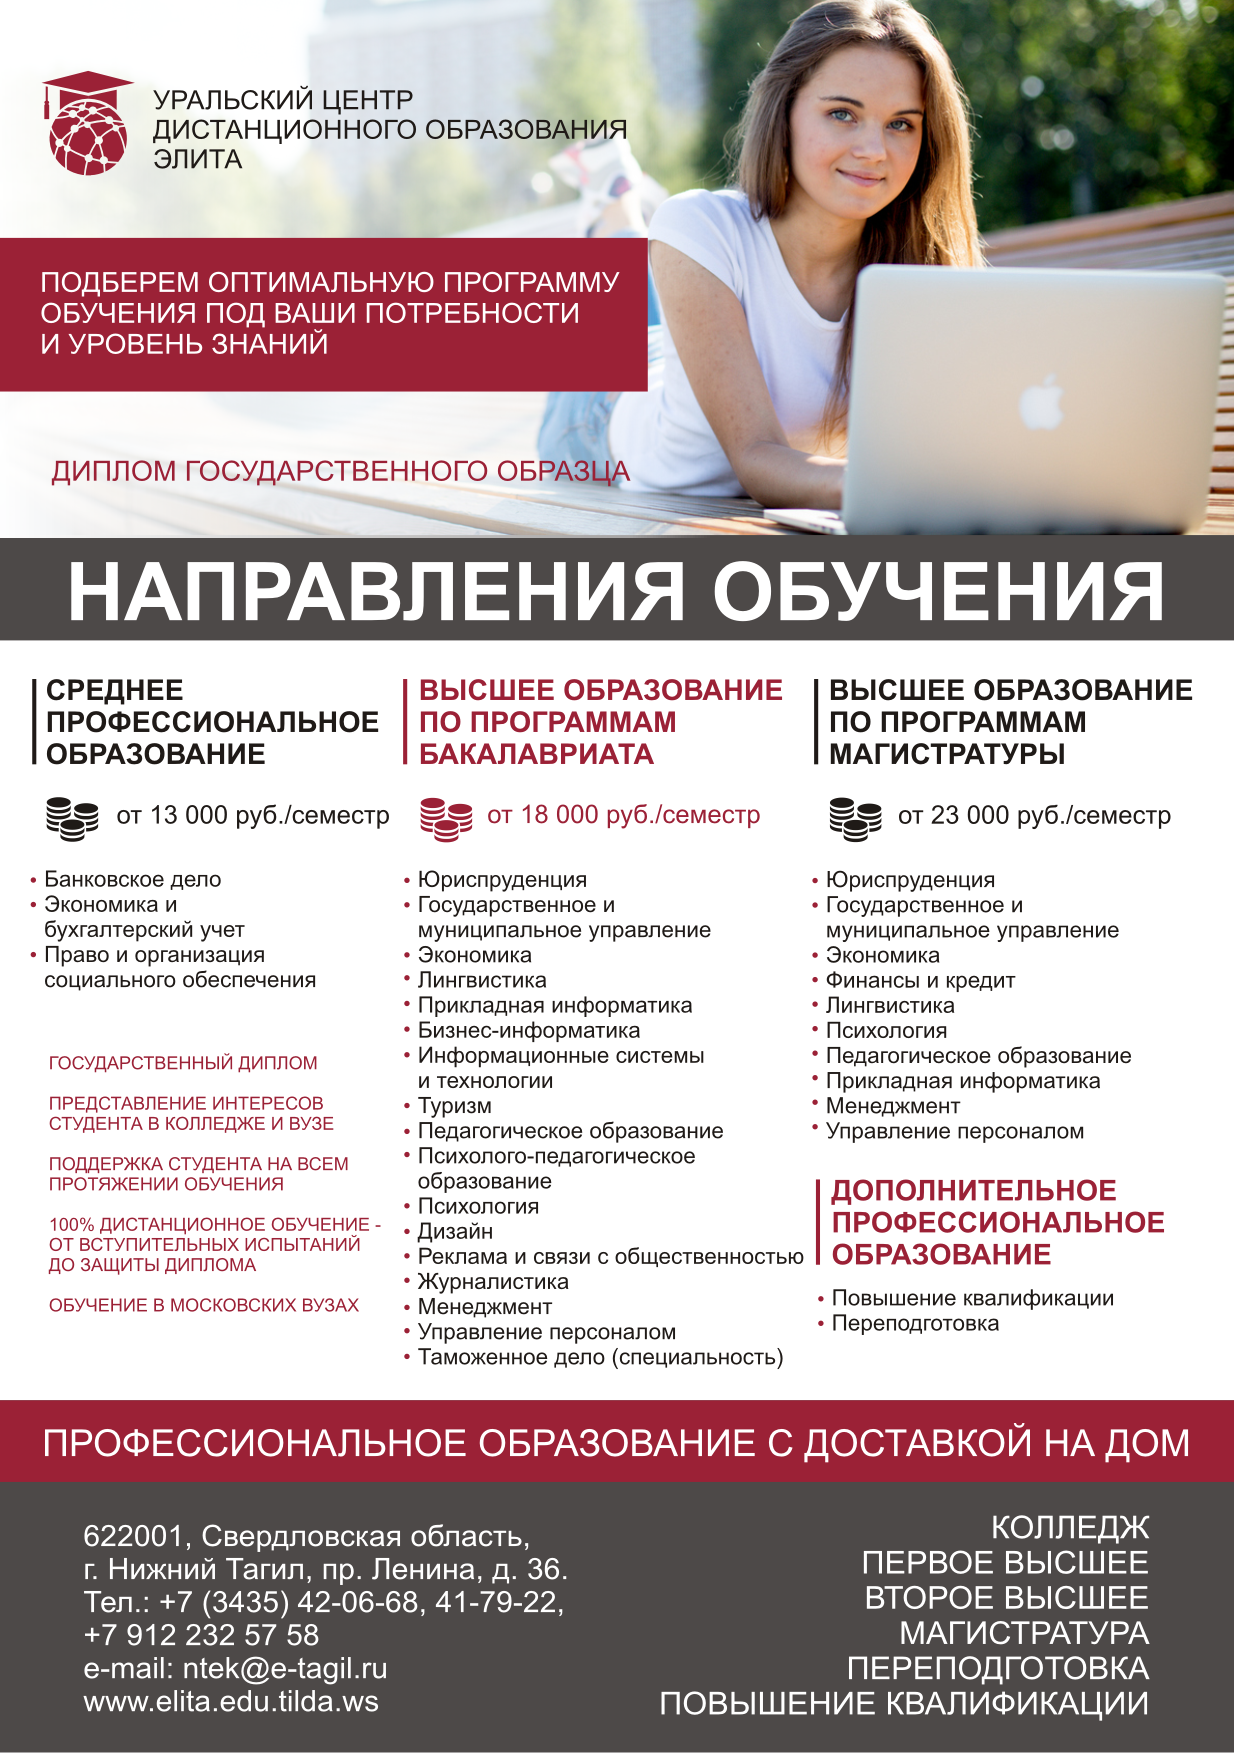 Сайт дистанционного обучения университета